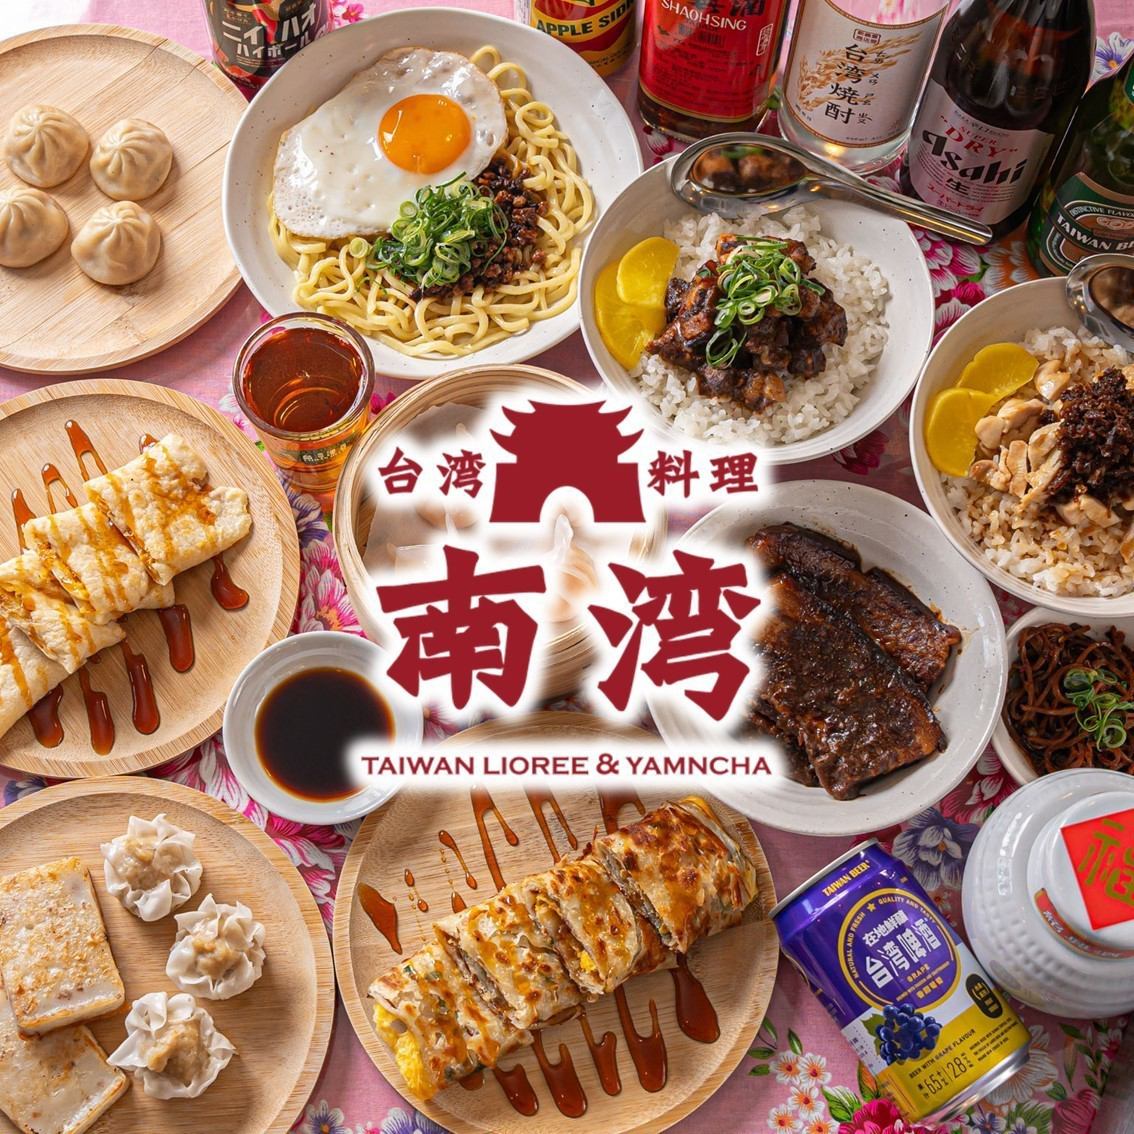 在享受旅行感觉的空间中享用正宗的街头美食和台湾酒。